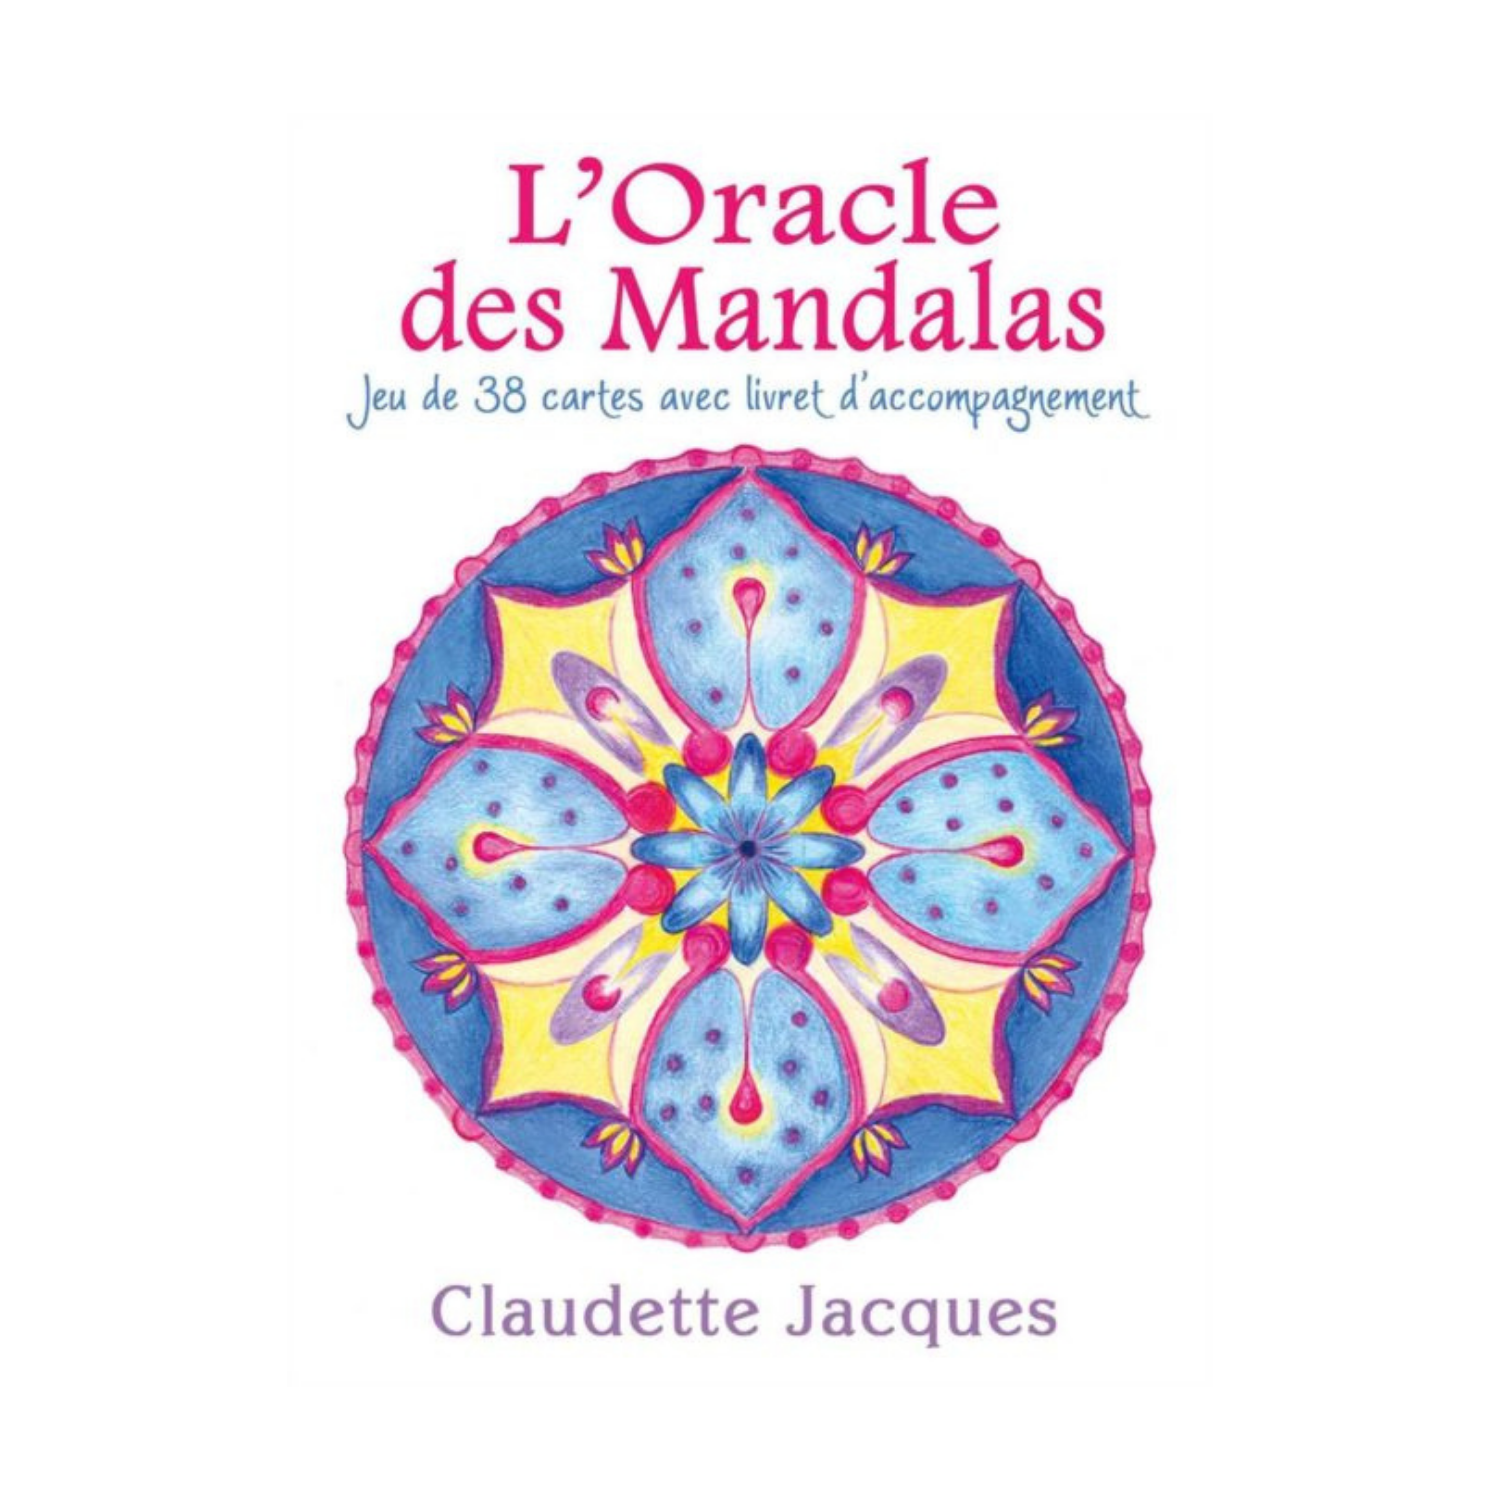 L'Oracle des Mandalas